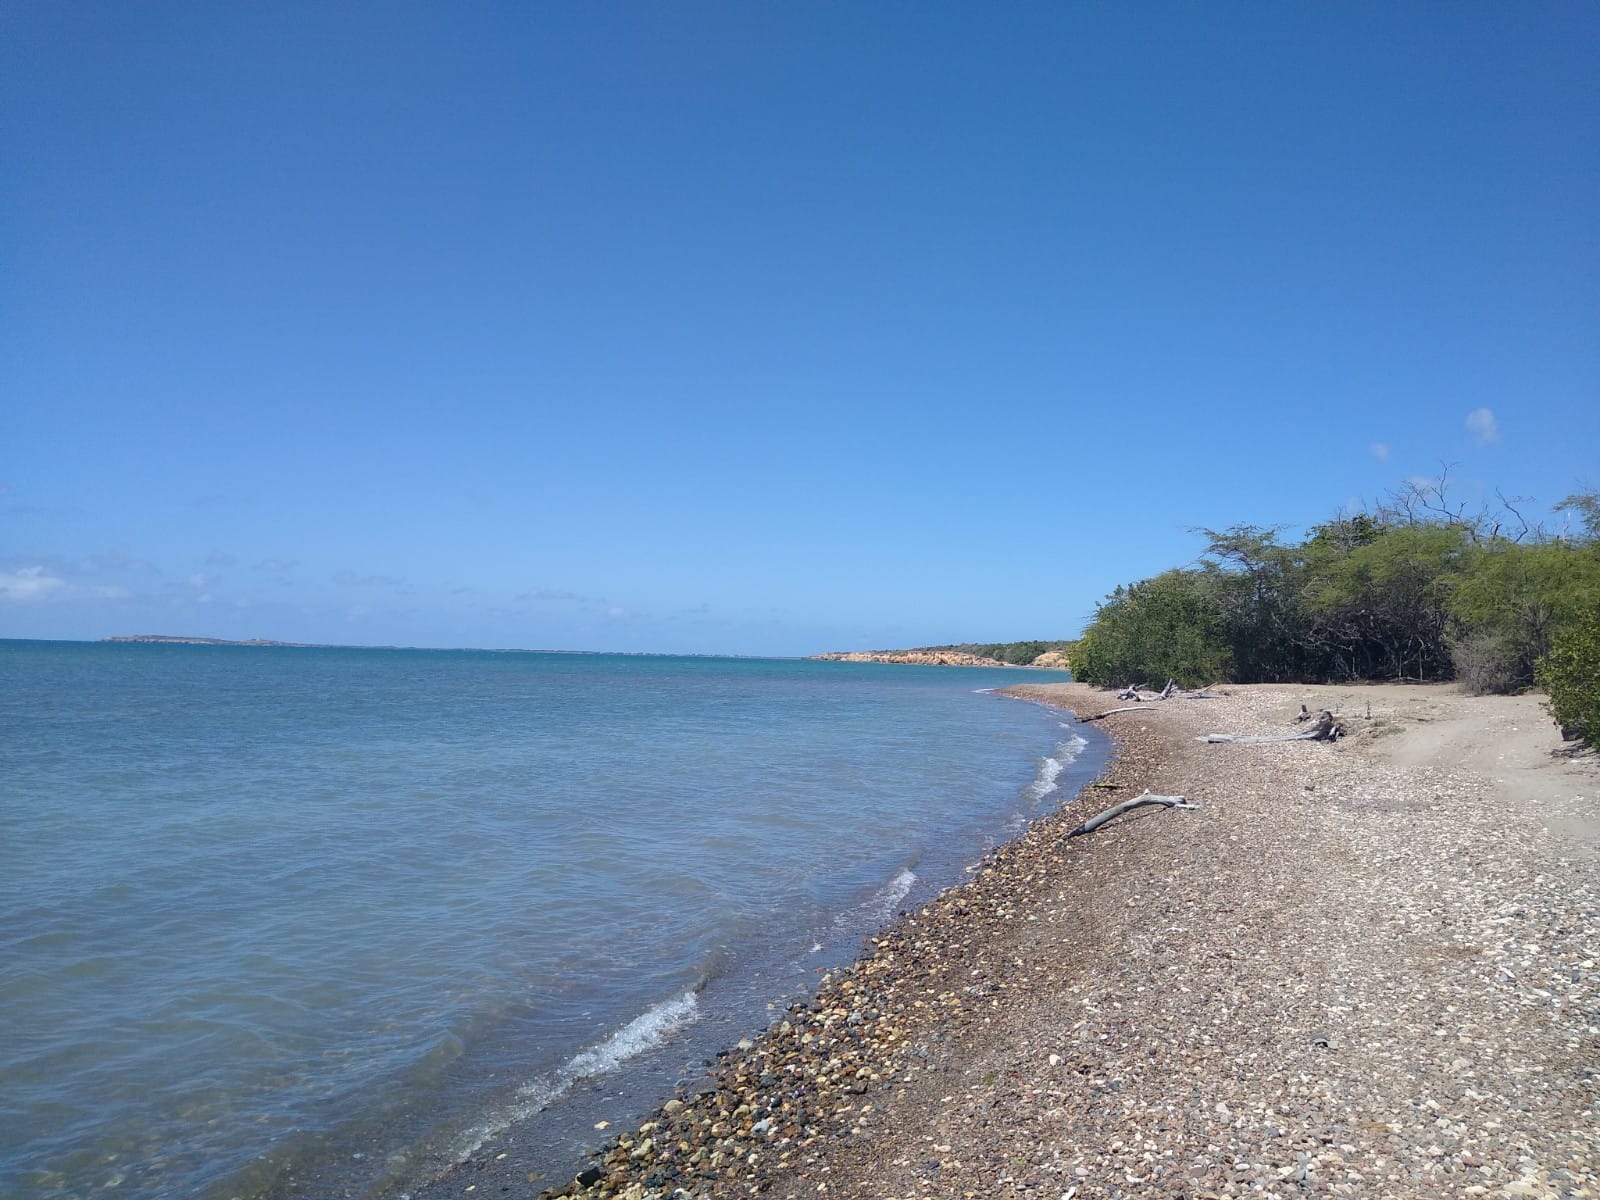 Foto von Playa Pitahaya mit grauer sand&kies Oberfläche